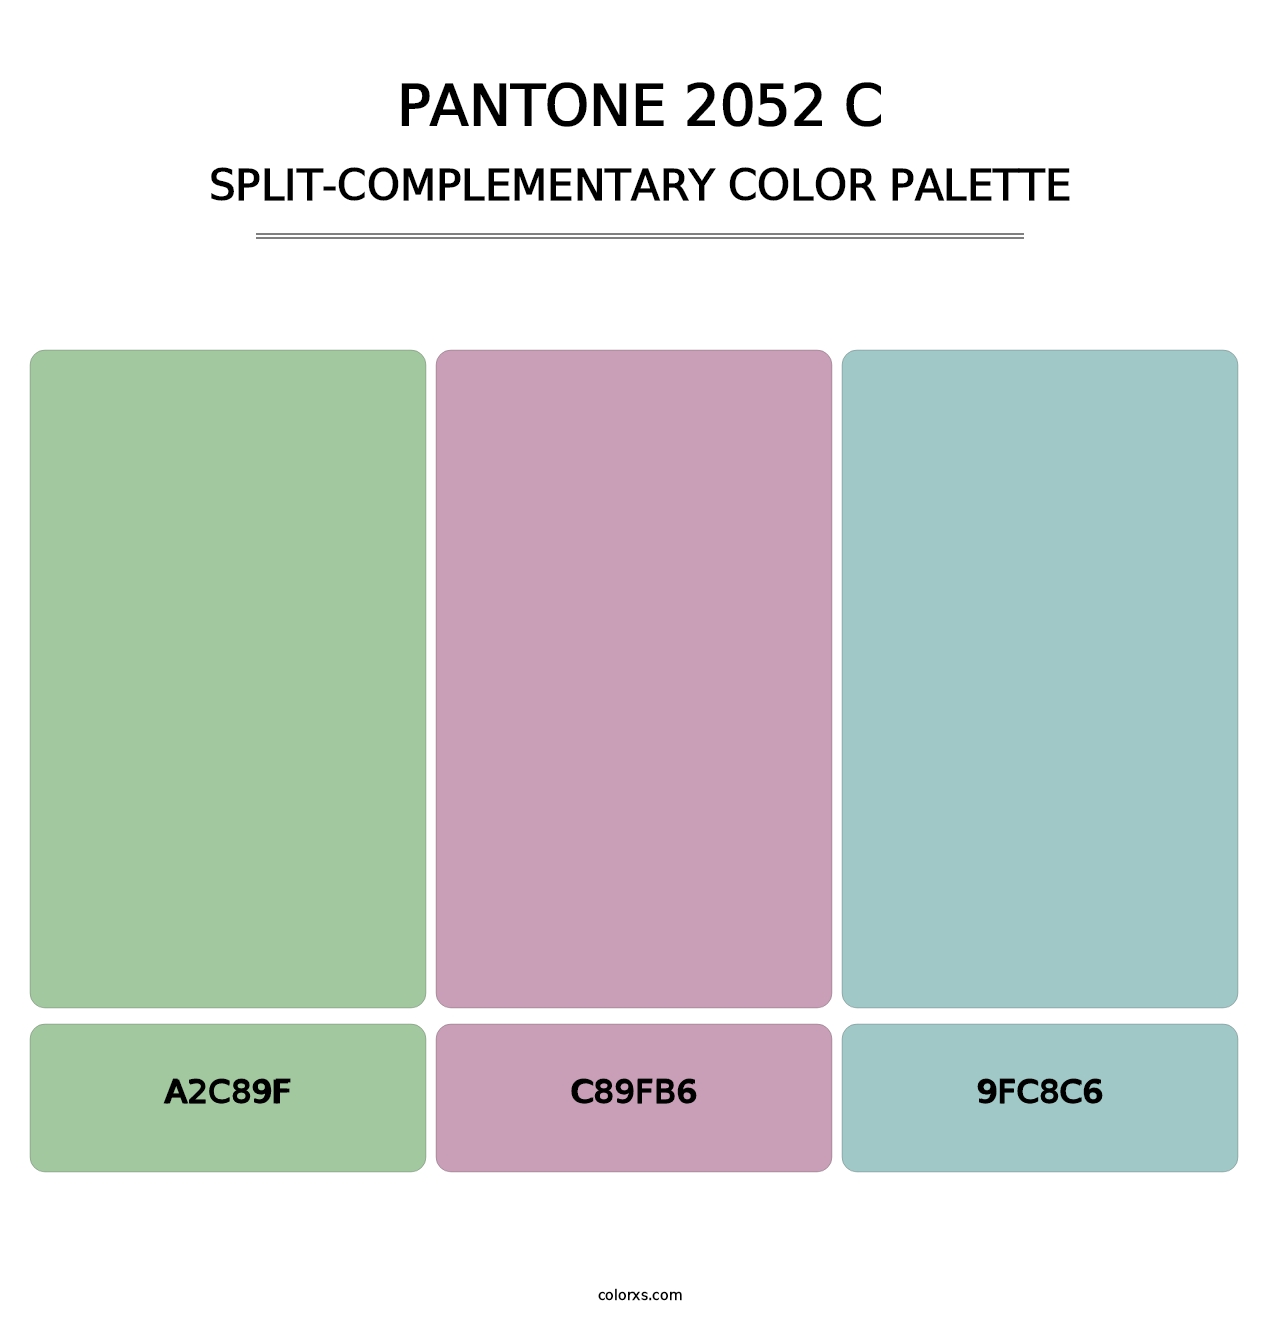 PANTONE 2052 C - Split-Complementary Color Palette